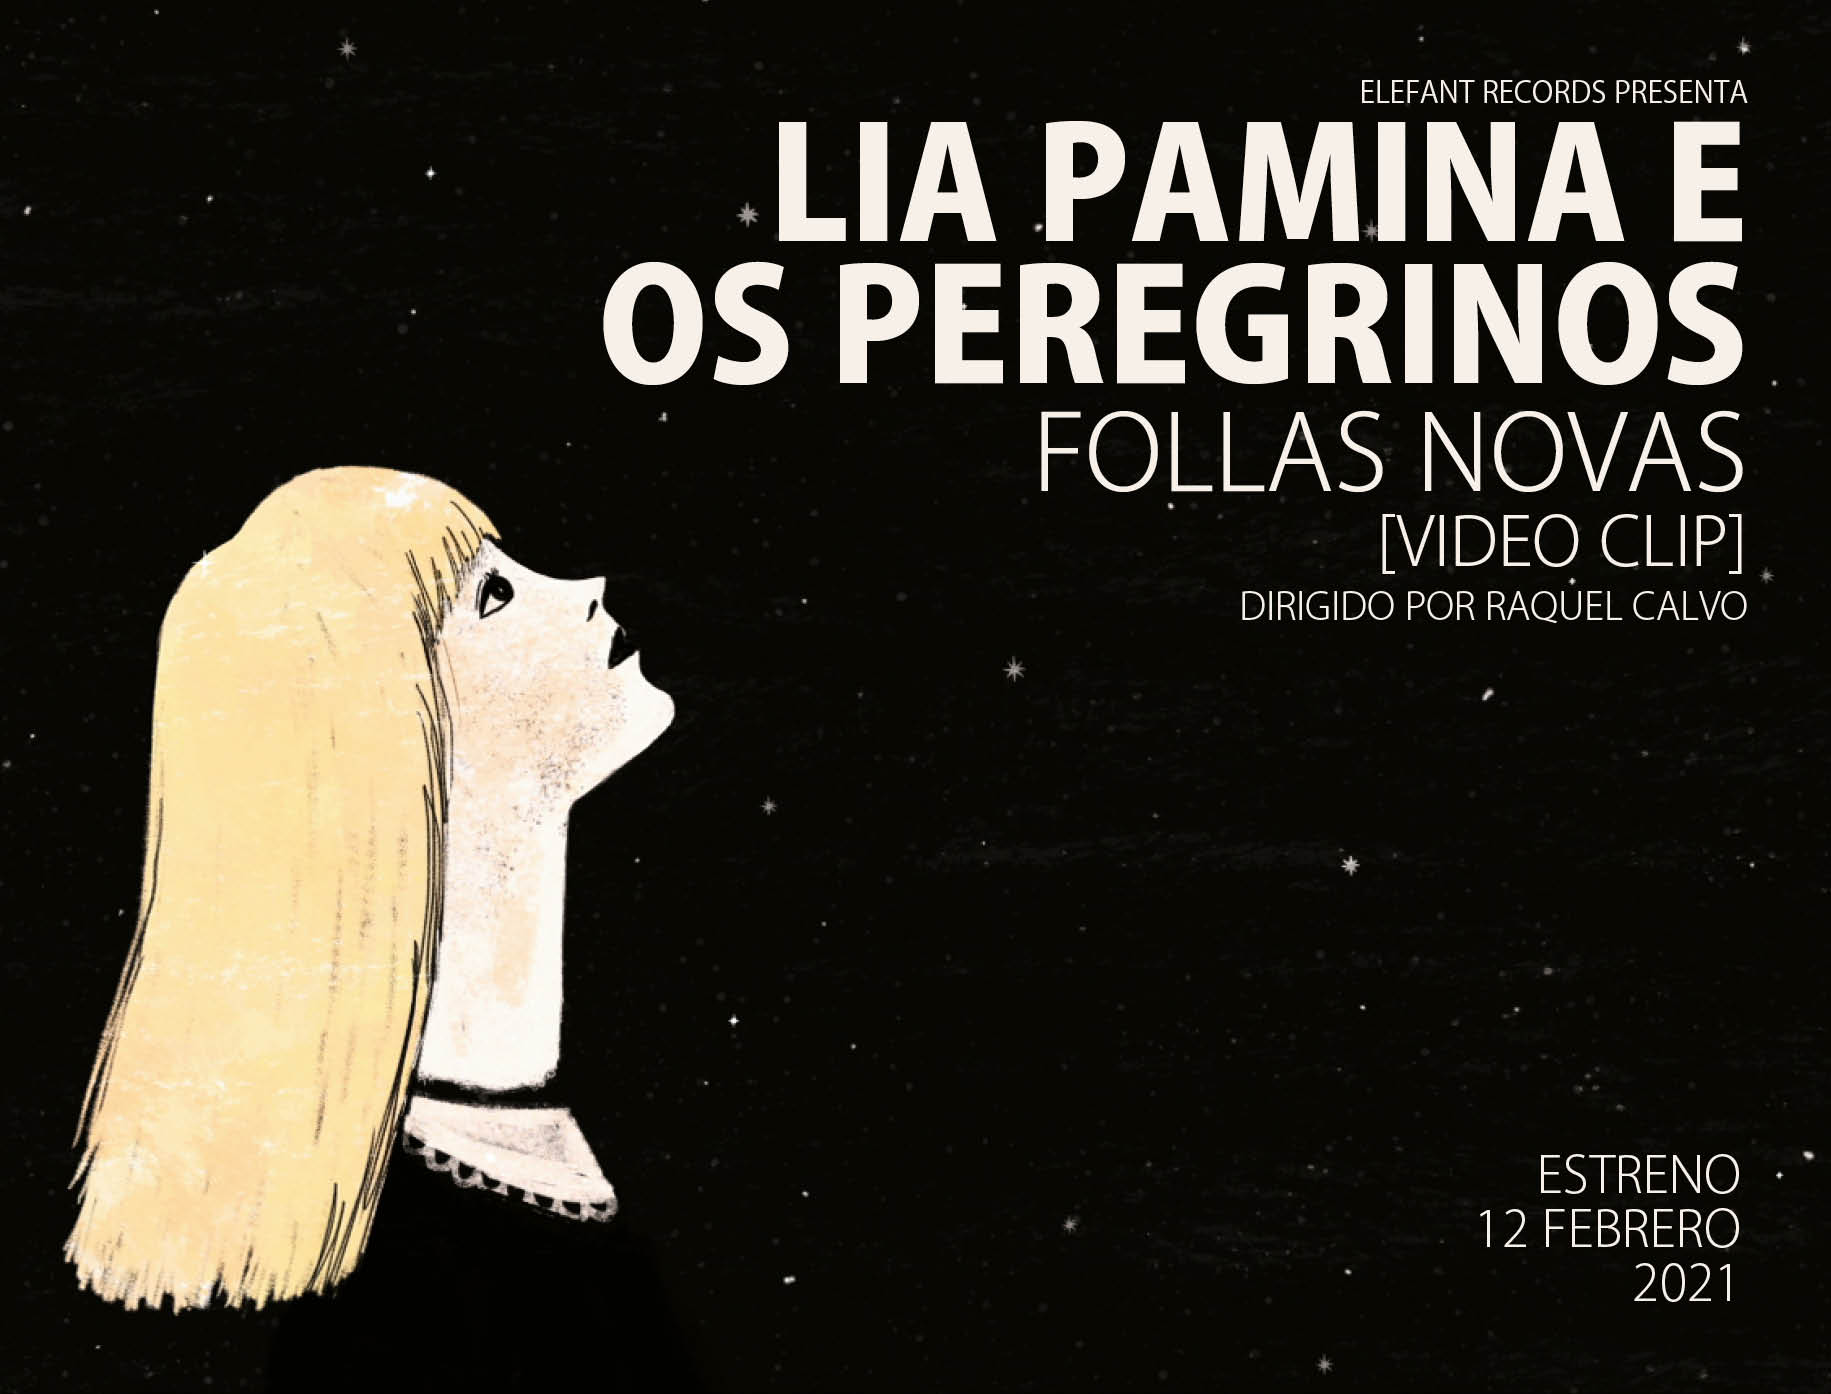 Lia Pamina E Os Peregrinos "Follas Novas" Video-Clip